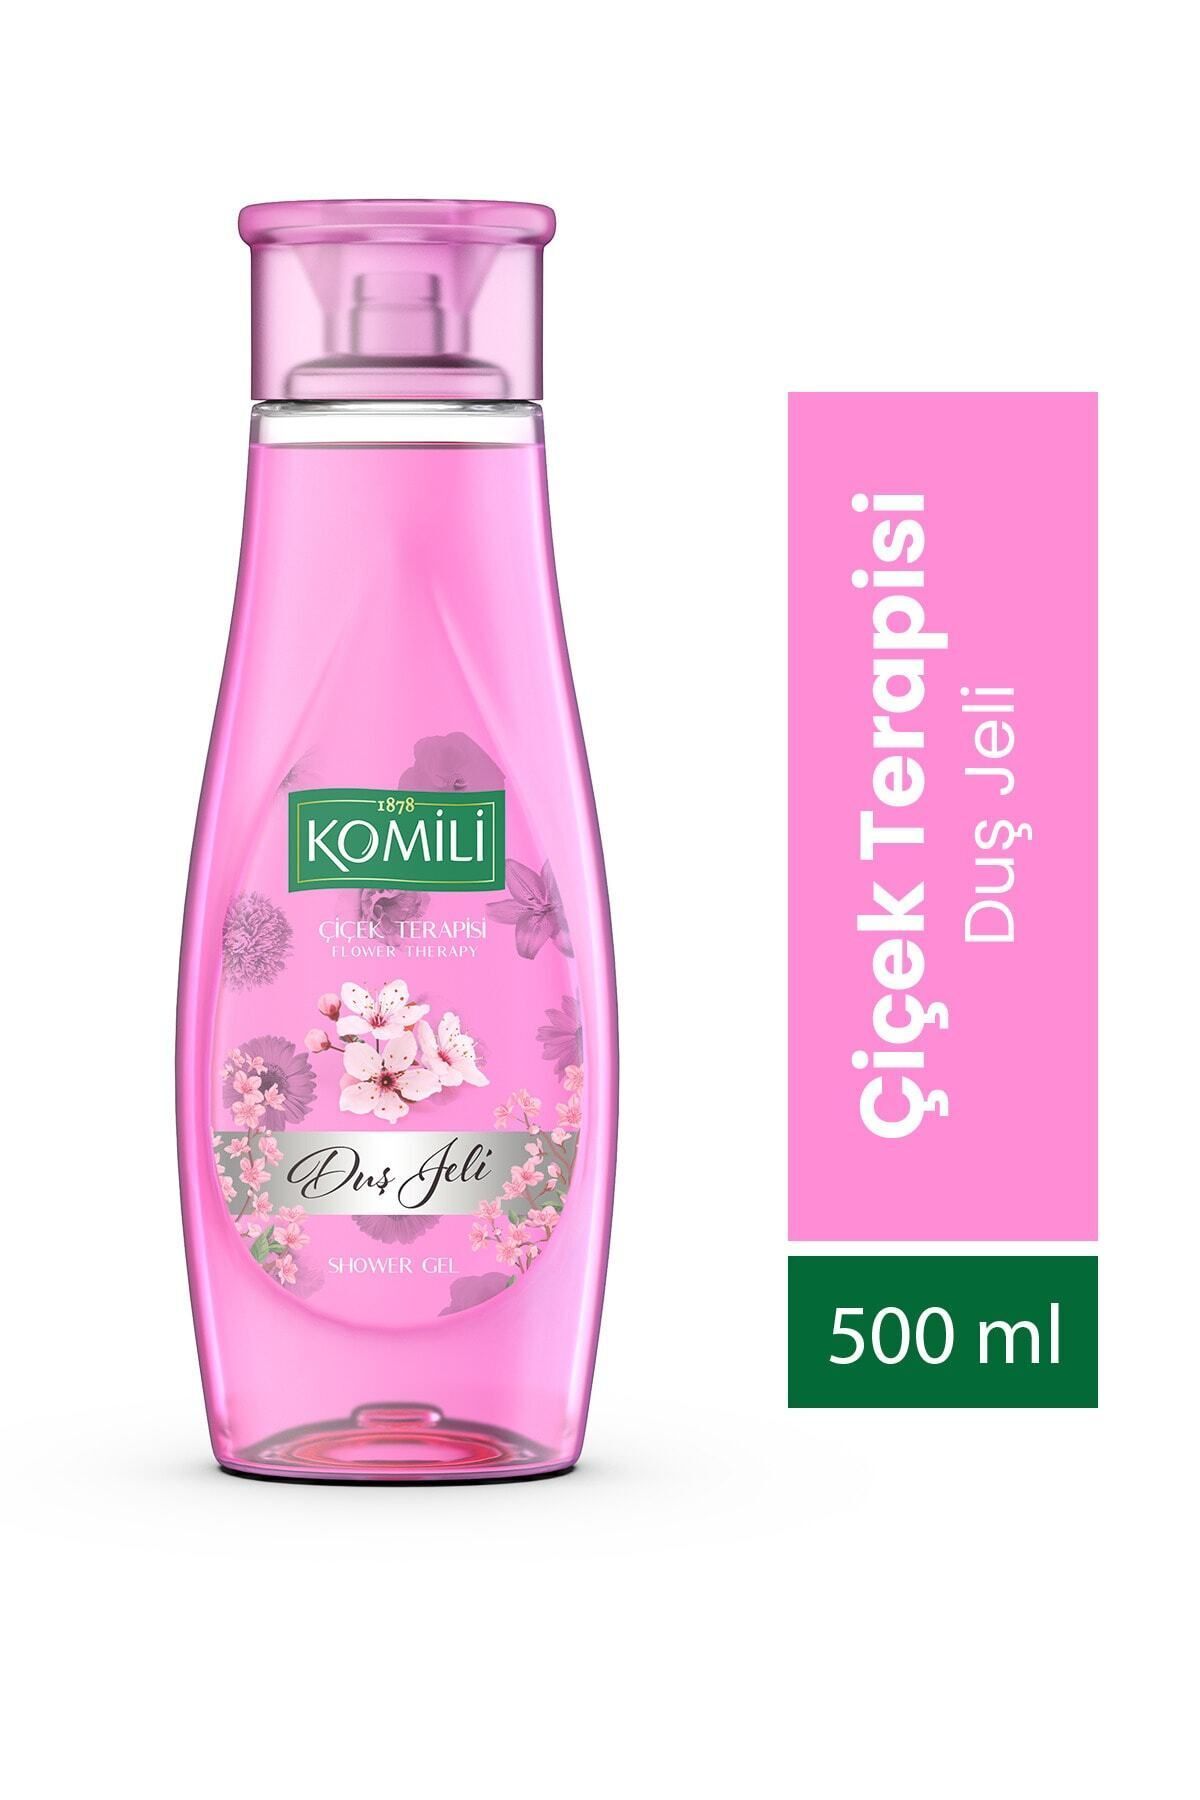 Komili Çiçek Terapisi Vegan Duş Jeli - Bahar Çiçekleri Kokulu - 500 ml